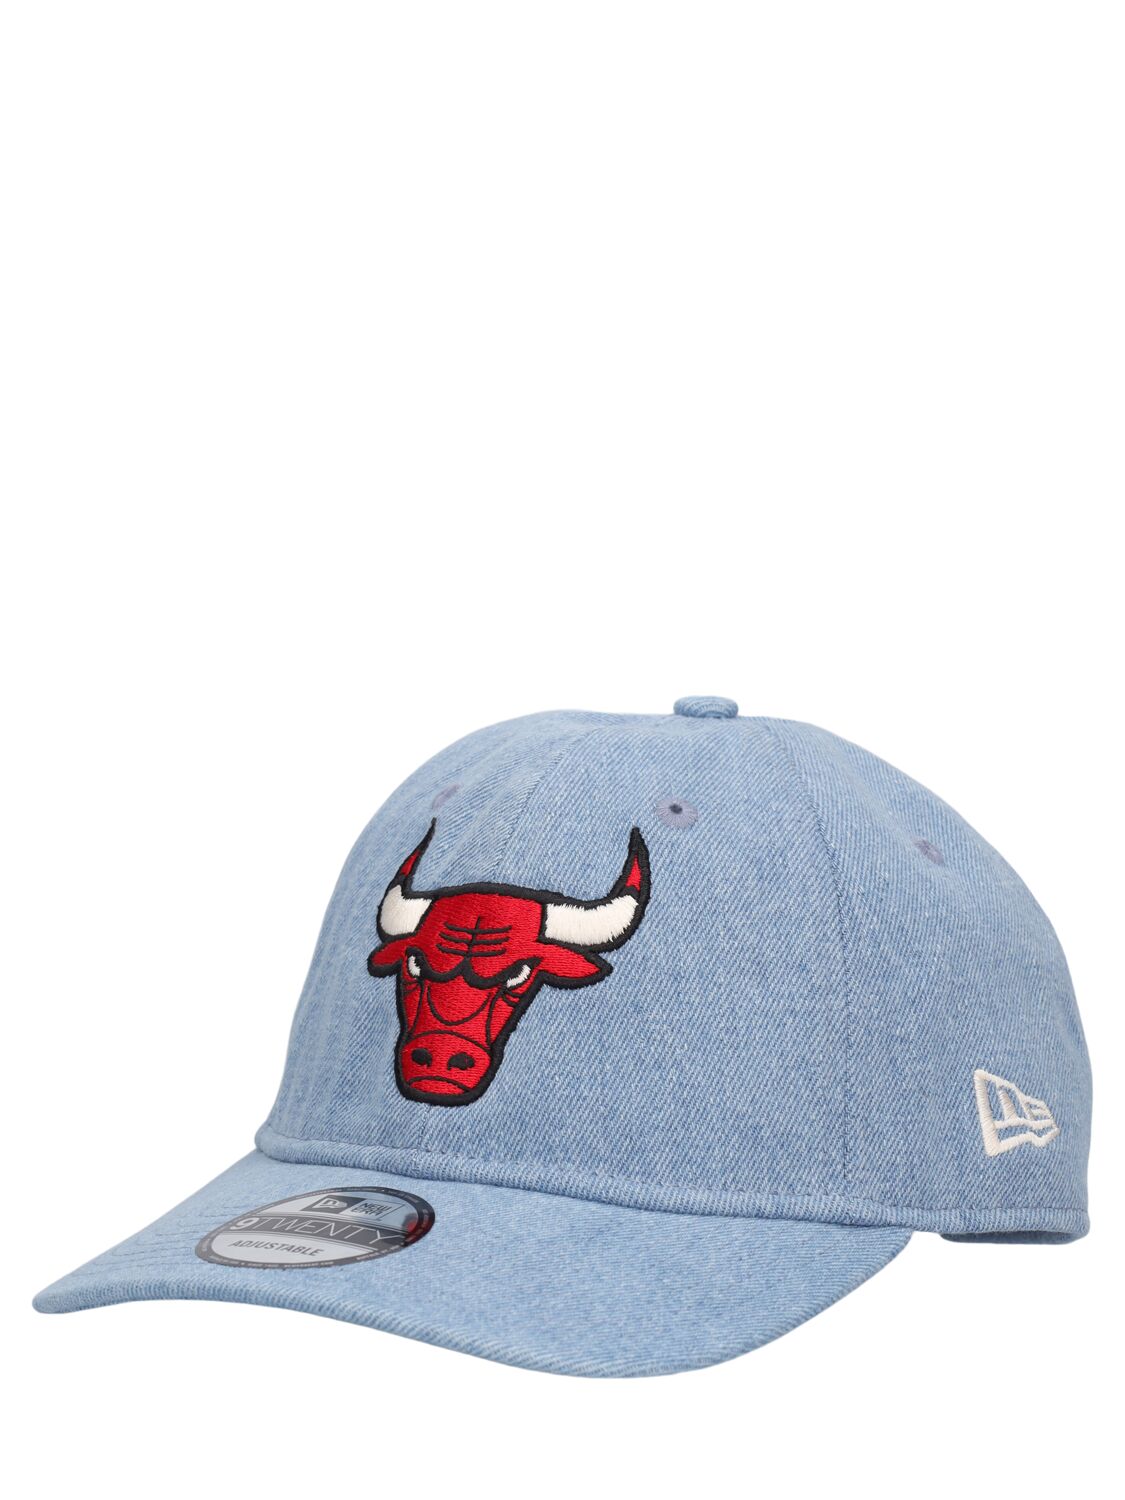 WASHED DENIM CHICAGO BULLS 9TWENTY棒球帽